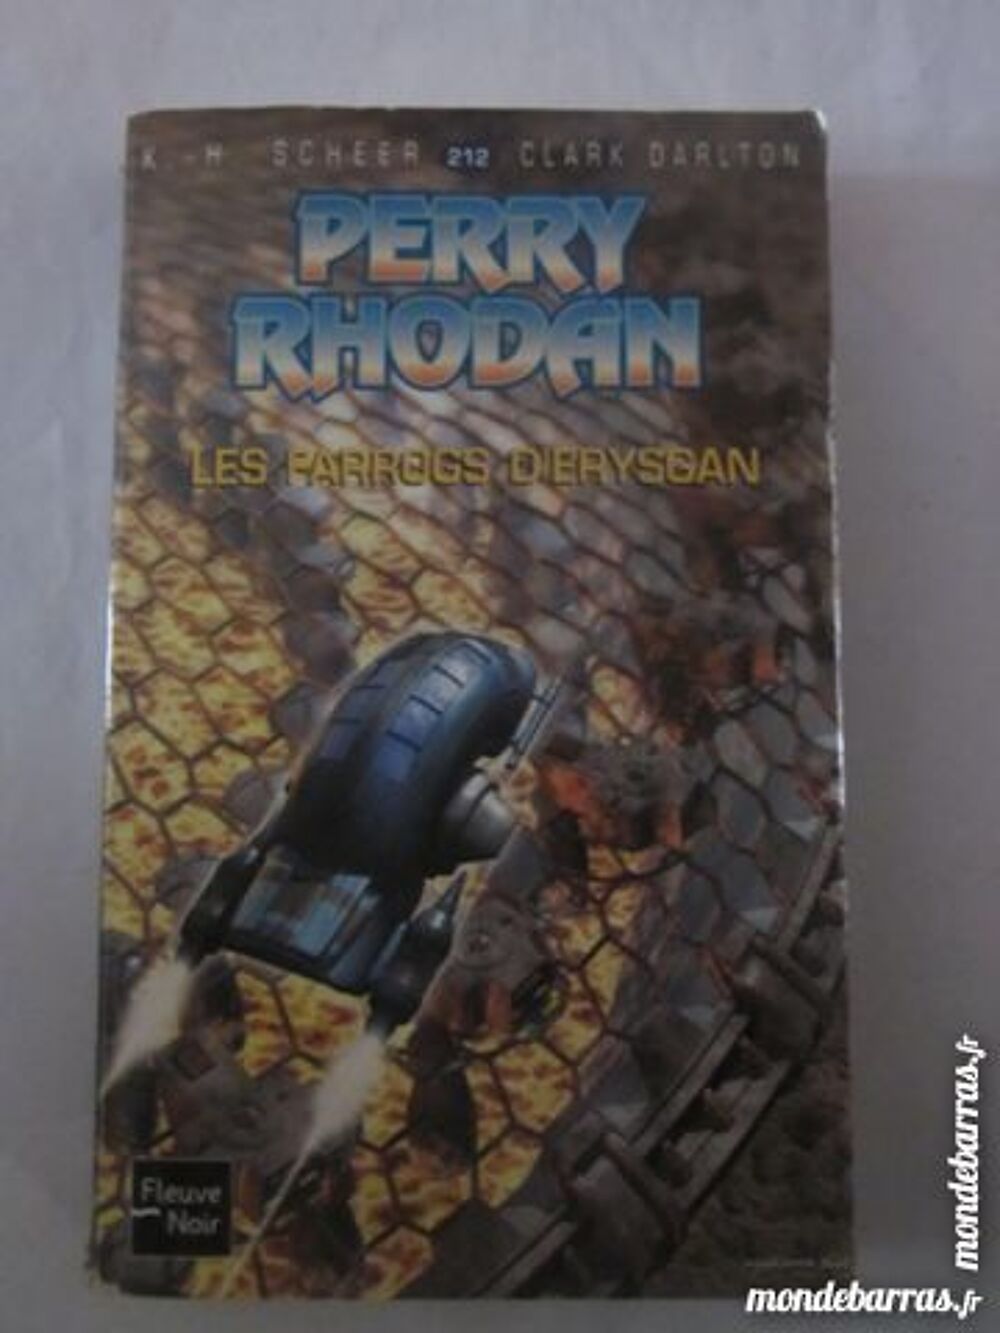 SF - PERRY RHODAN 212 LES FARROGS D' ERYSGAN Livres et BD